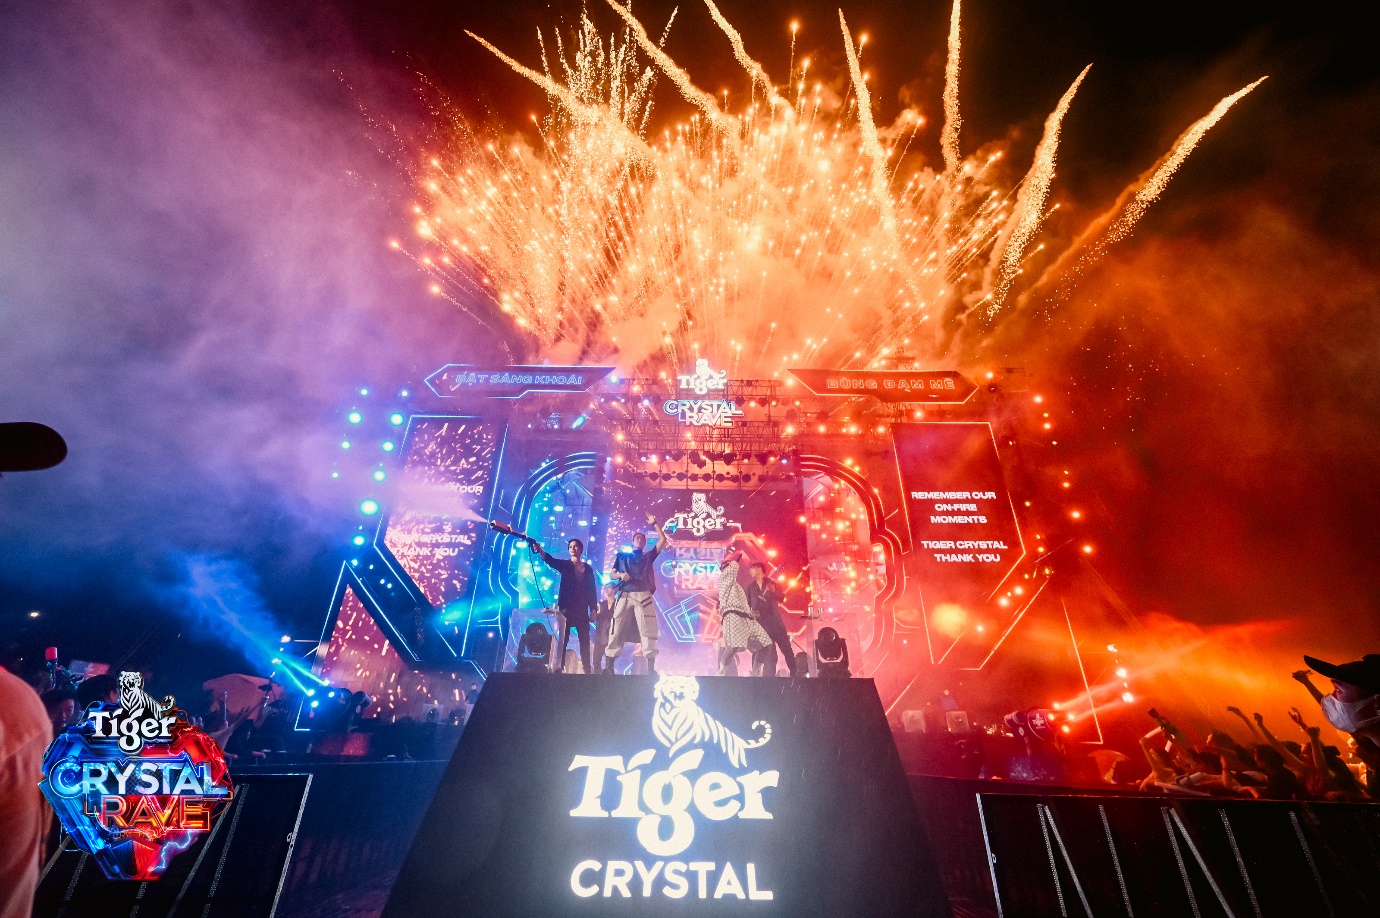 Water EDM Festival của năm gọi tên Tiger Crystal Rave 2.0, đại tiệc té nước cho 140.000 raver - Ảnh 9.